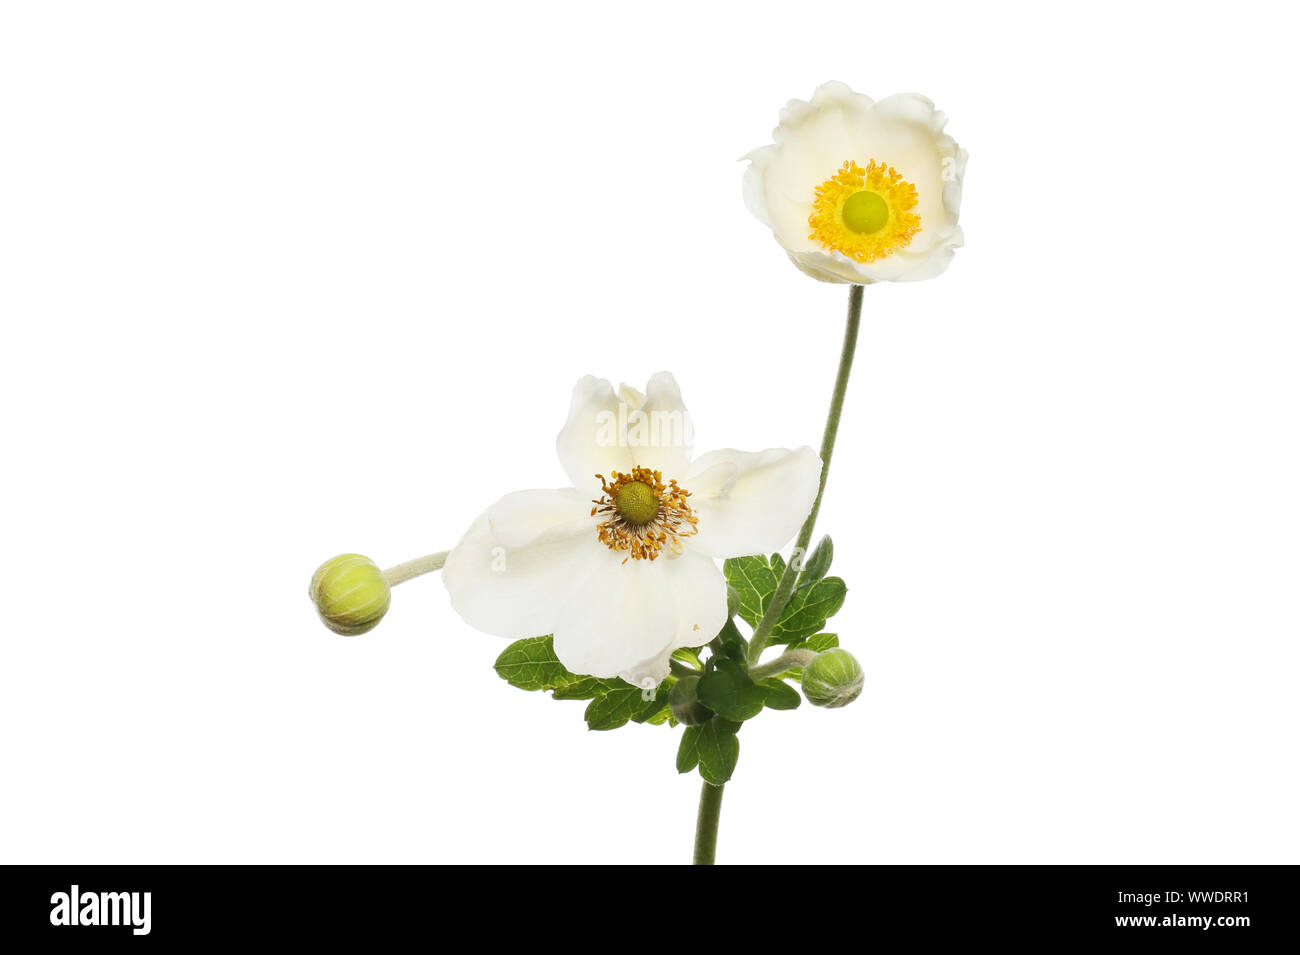 La décoloration et l'ouverture récente de l'anémone blanche fleurs et feuillages et bourgeons isolés contre white Banque D'Images